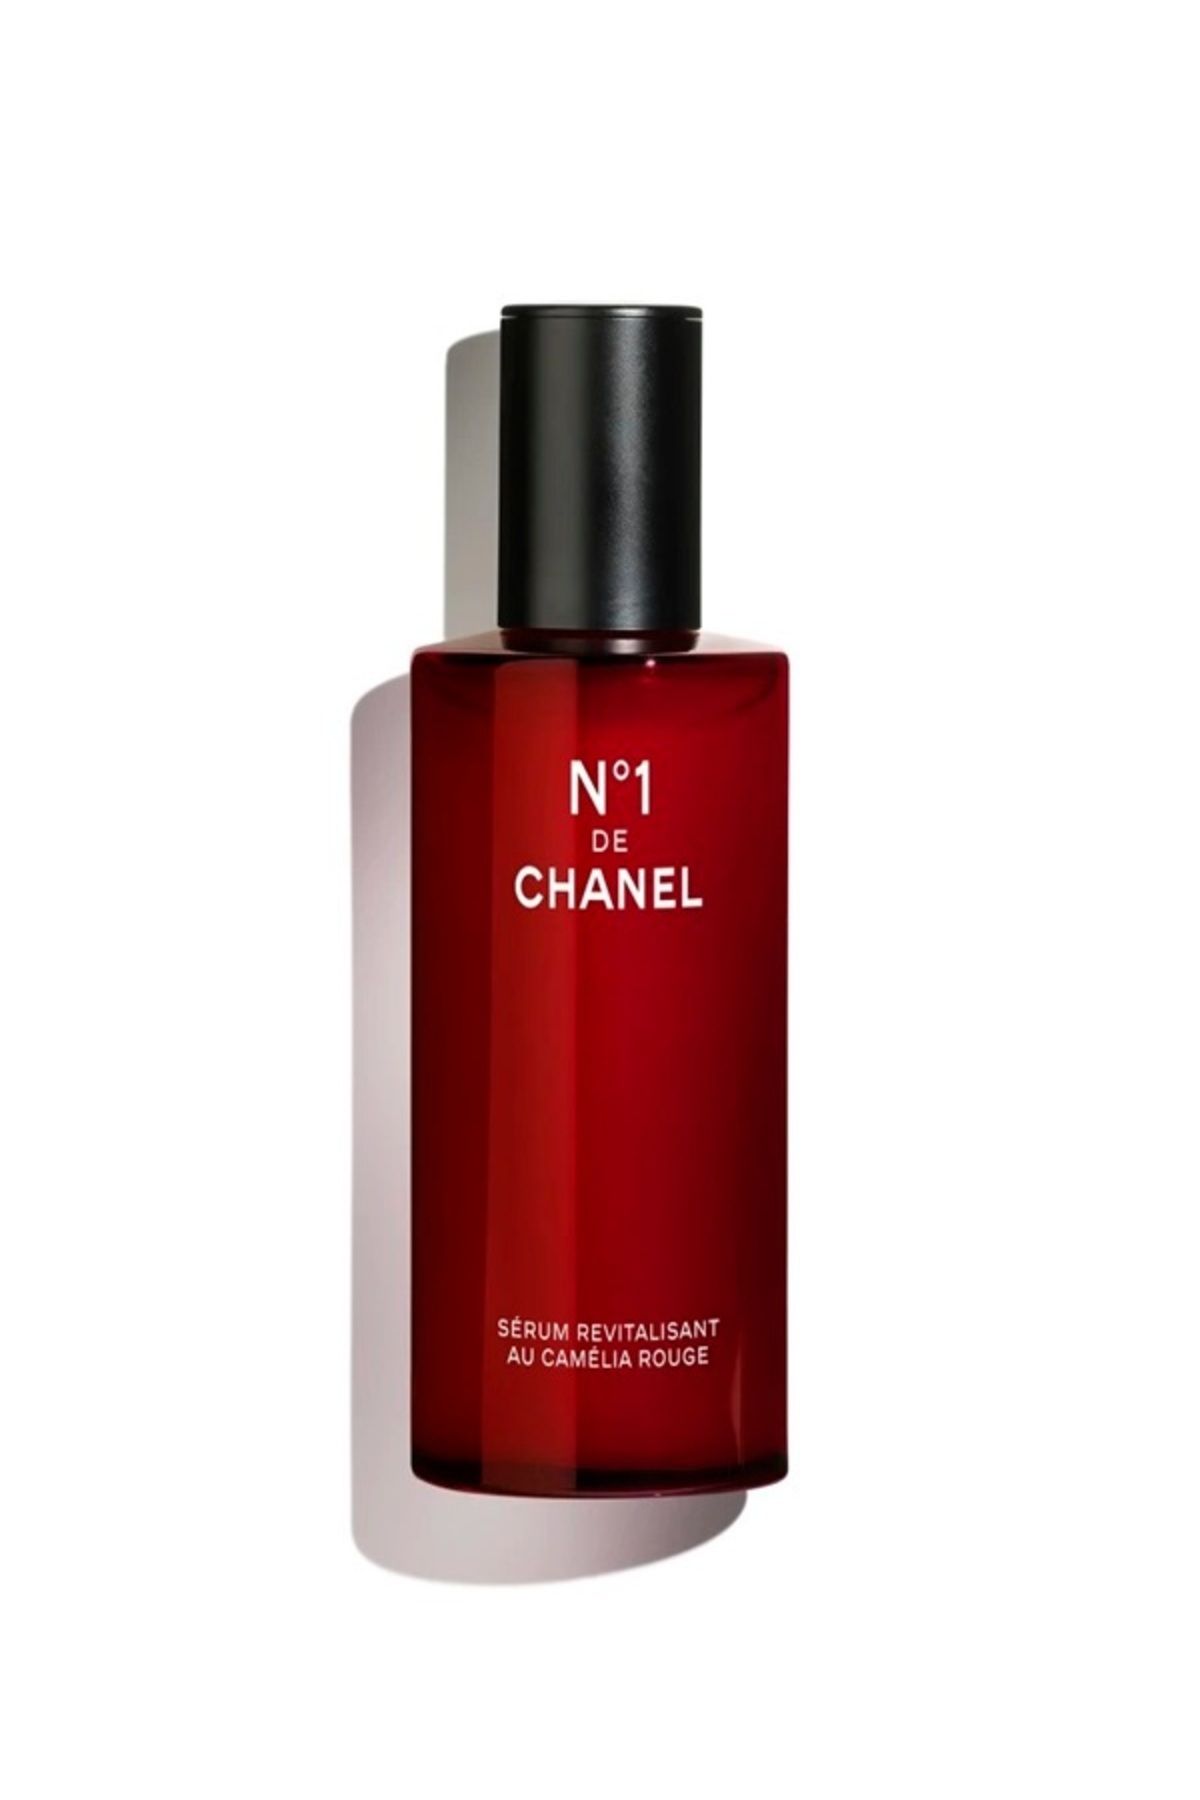 Chanel N°1 DE CHANEL REVITALIZING SERUM-GENÇ GÖRÜNEN CİLT-PÜRÜZSÜZLEŞTİRİR-AYDINLIK GÖRÜNÜM SAĞLAR 100ml